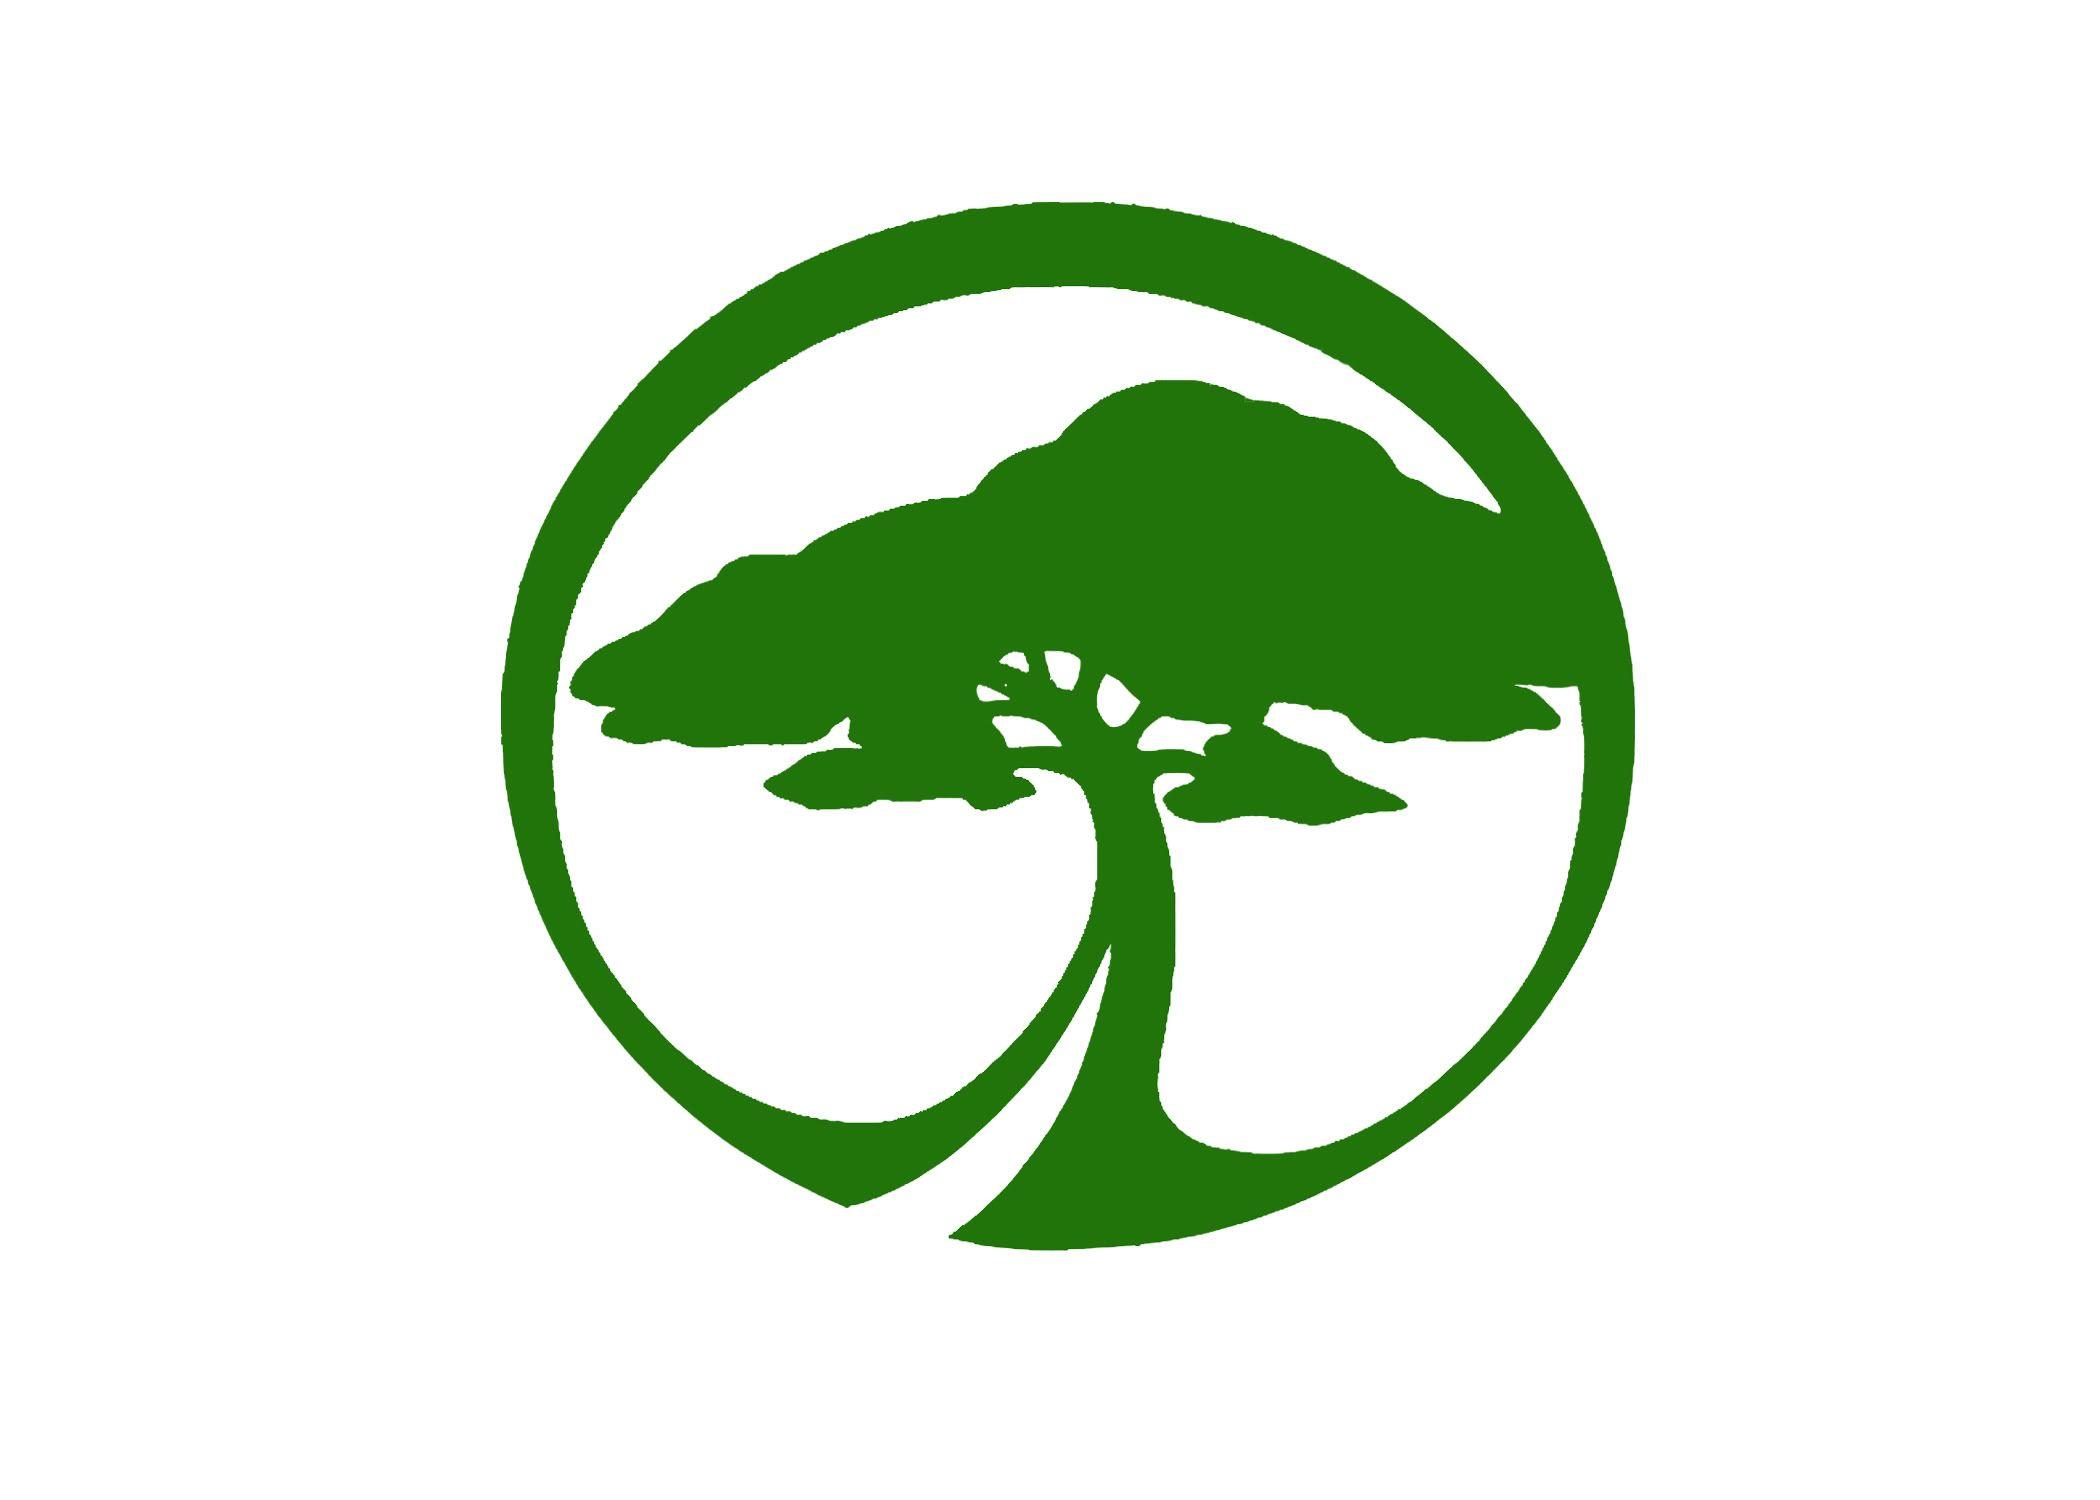 Landscaping Service Logo - Gardening logo templates